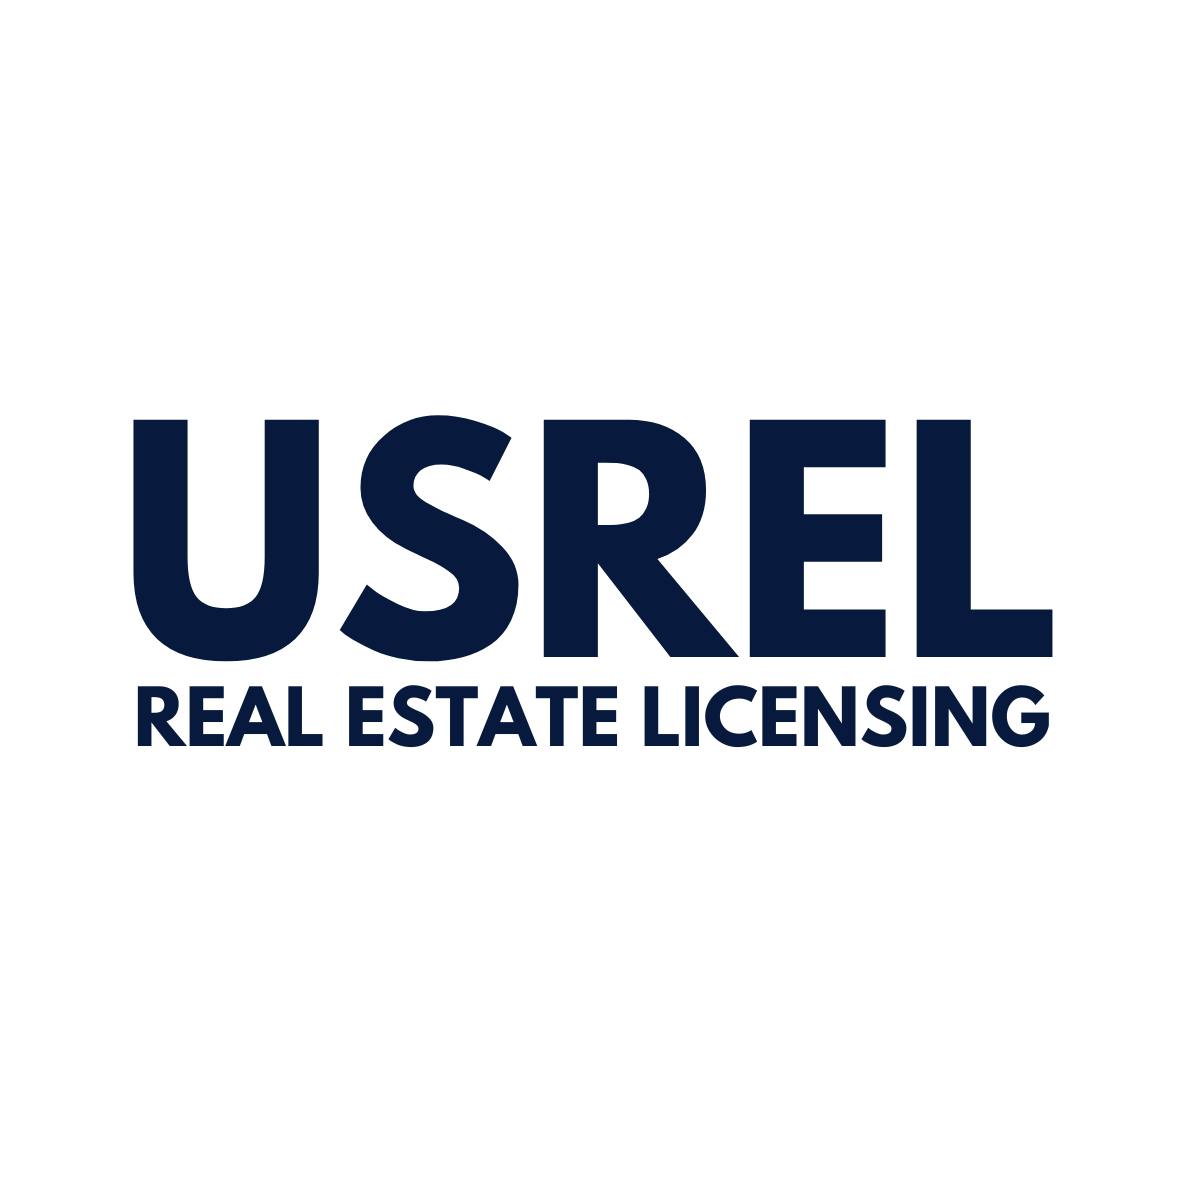 Home Inspection Real Estate Licensing USREL